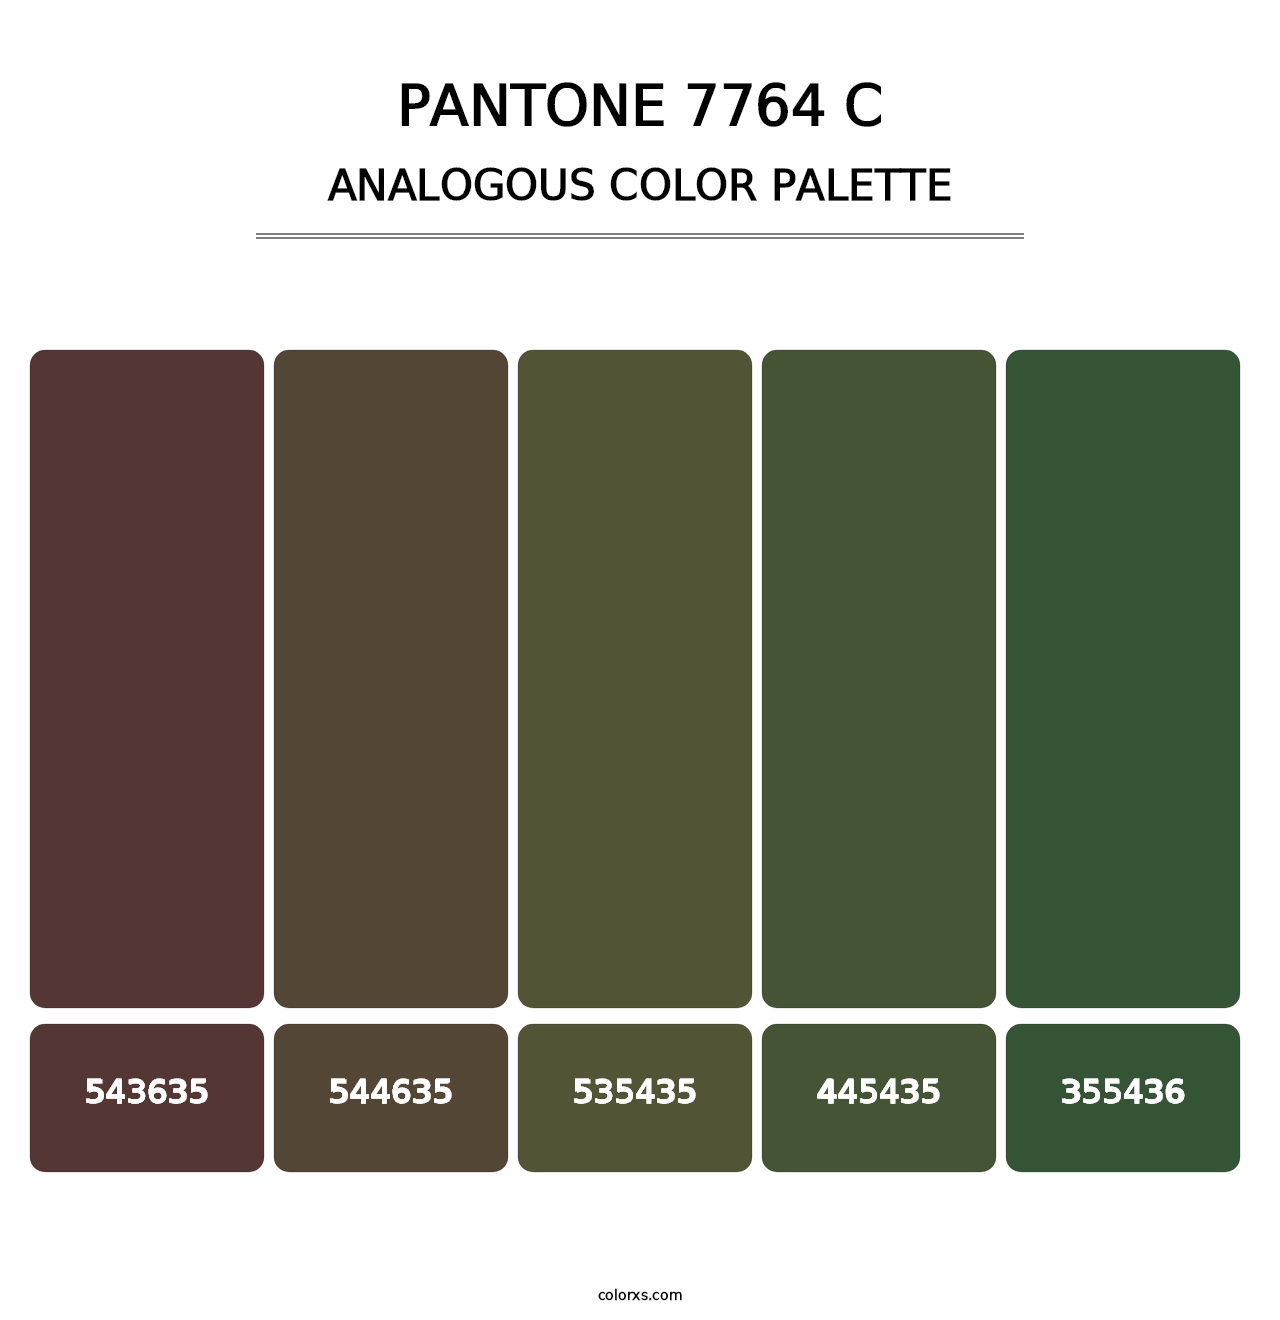 PANTONE 7764 C - Analogous Color Palette